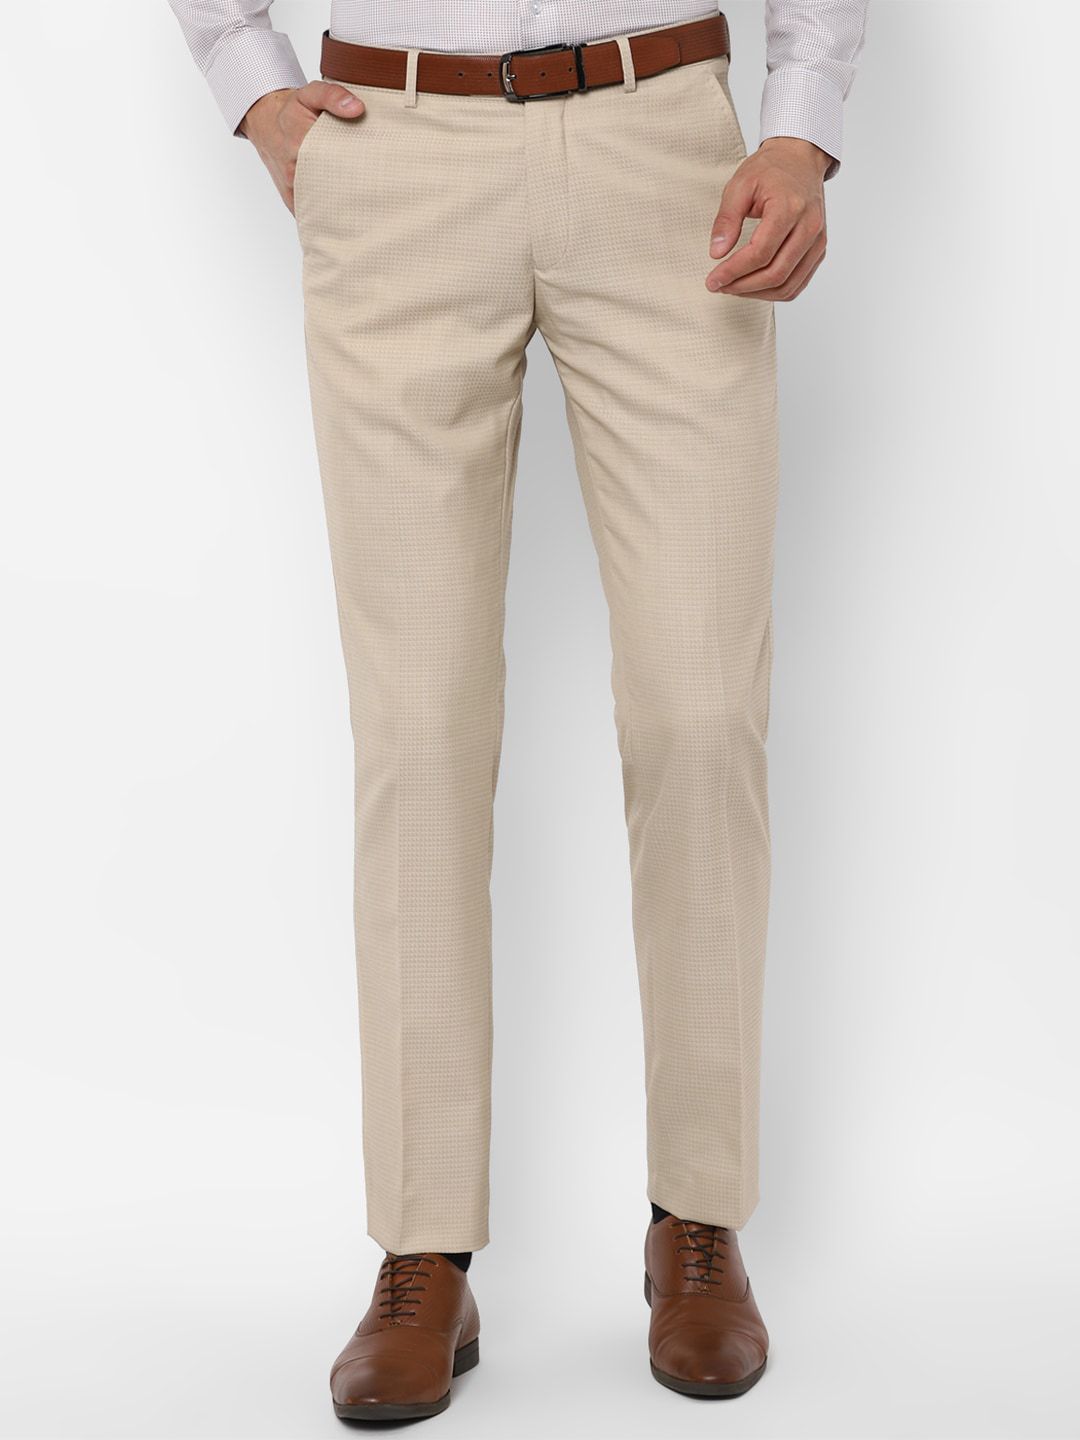 Buy Men Olive Green Regular Fit Self Design Formal Trousers online   Looksgudin